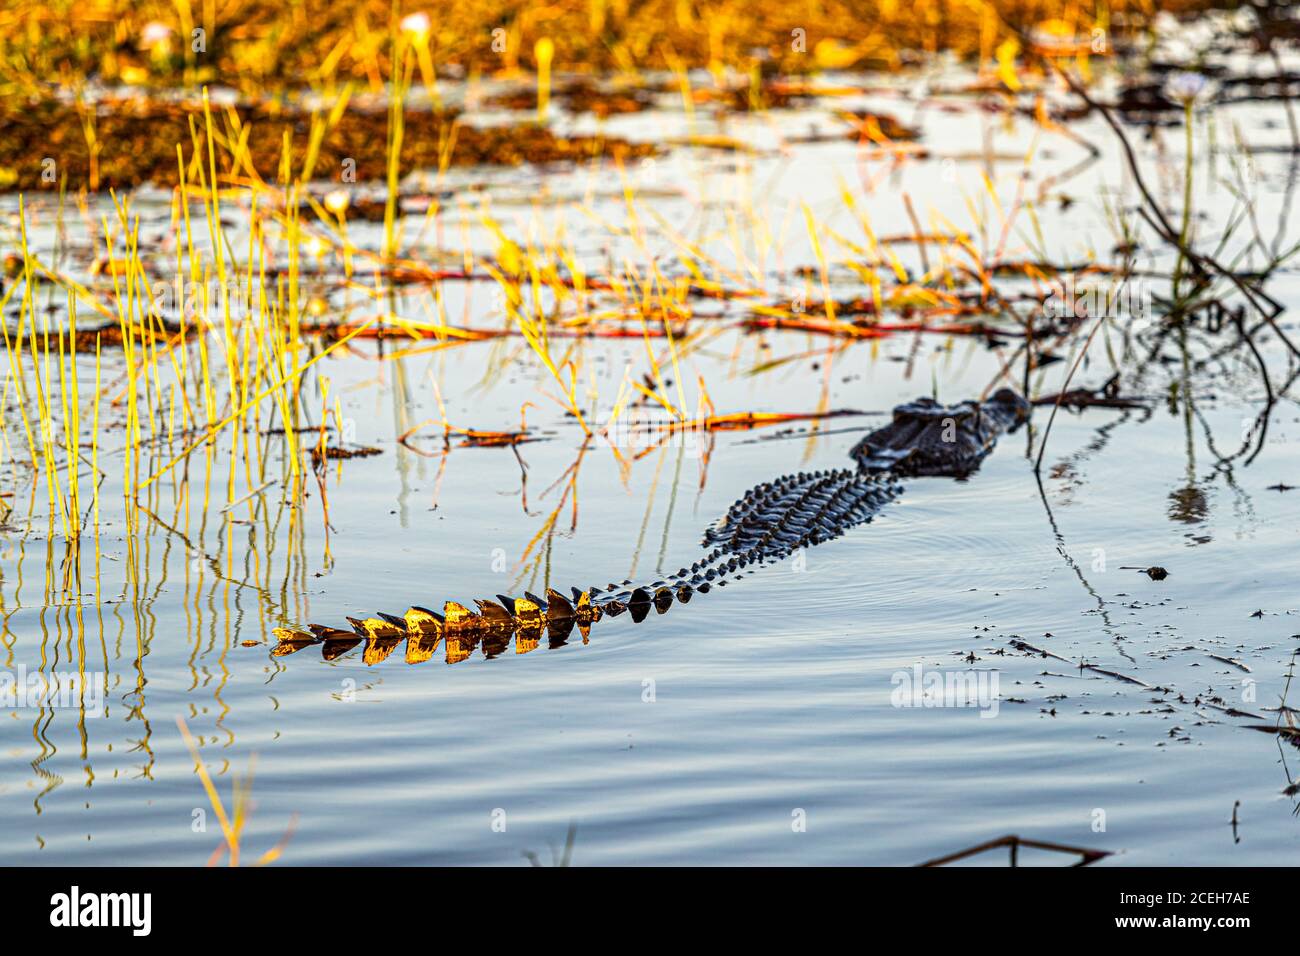 Crocodile of Northern Australia Stock Photo